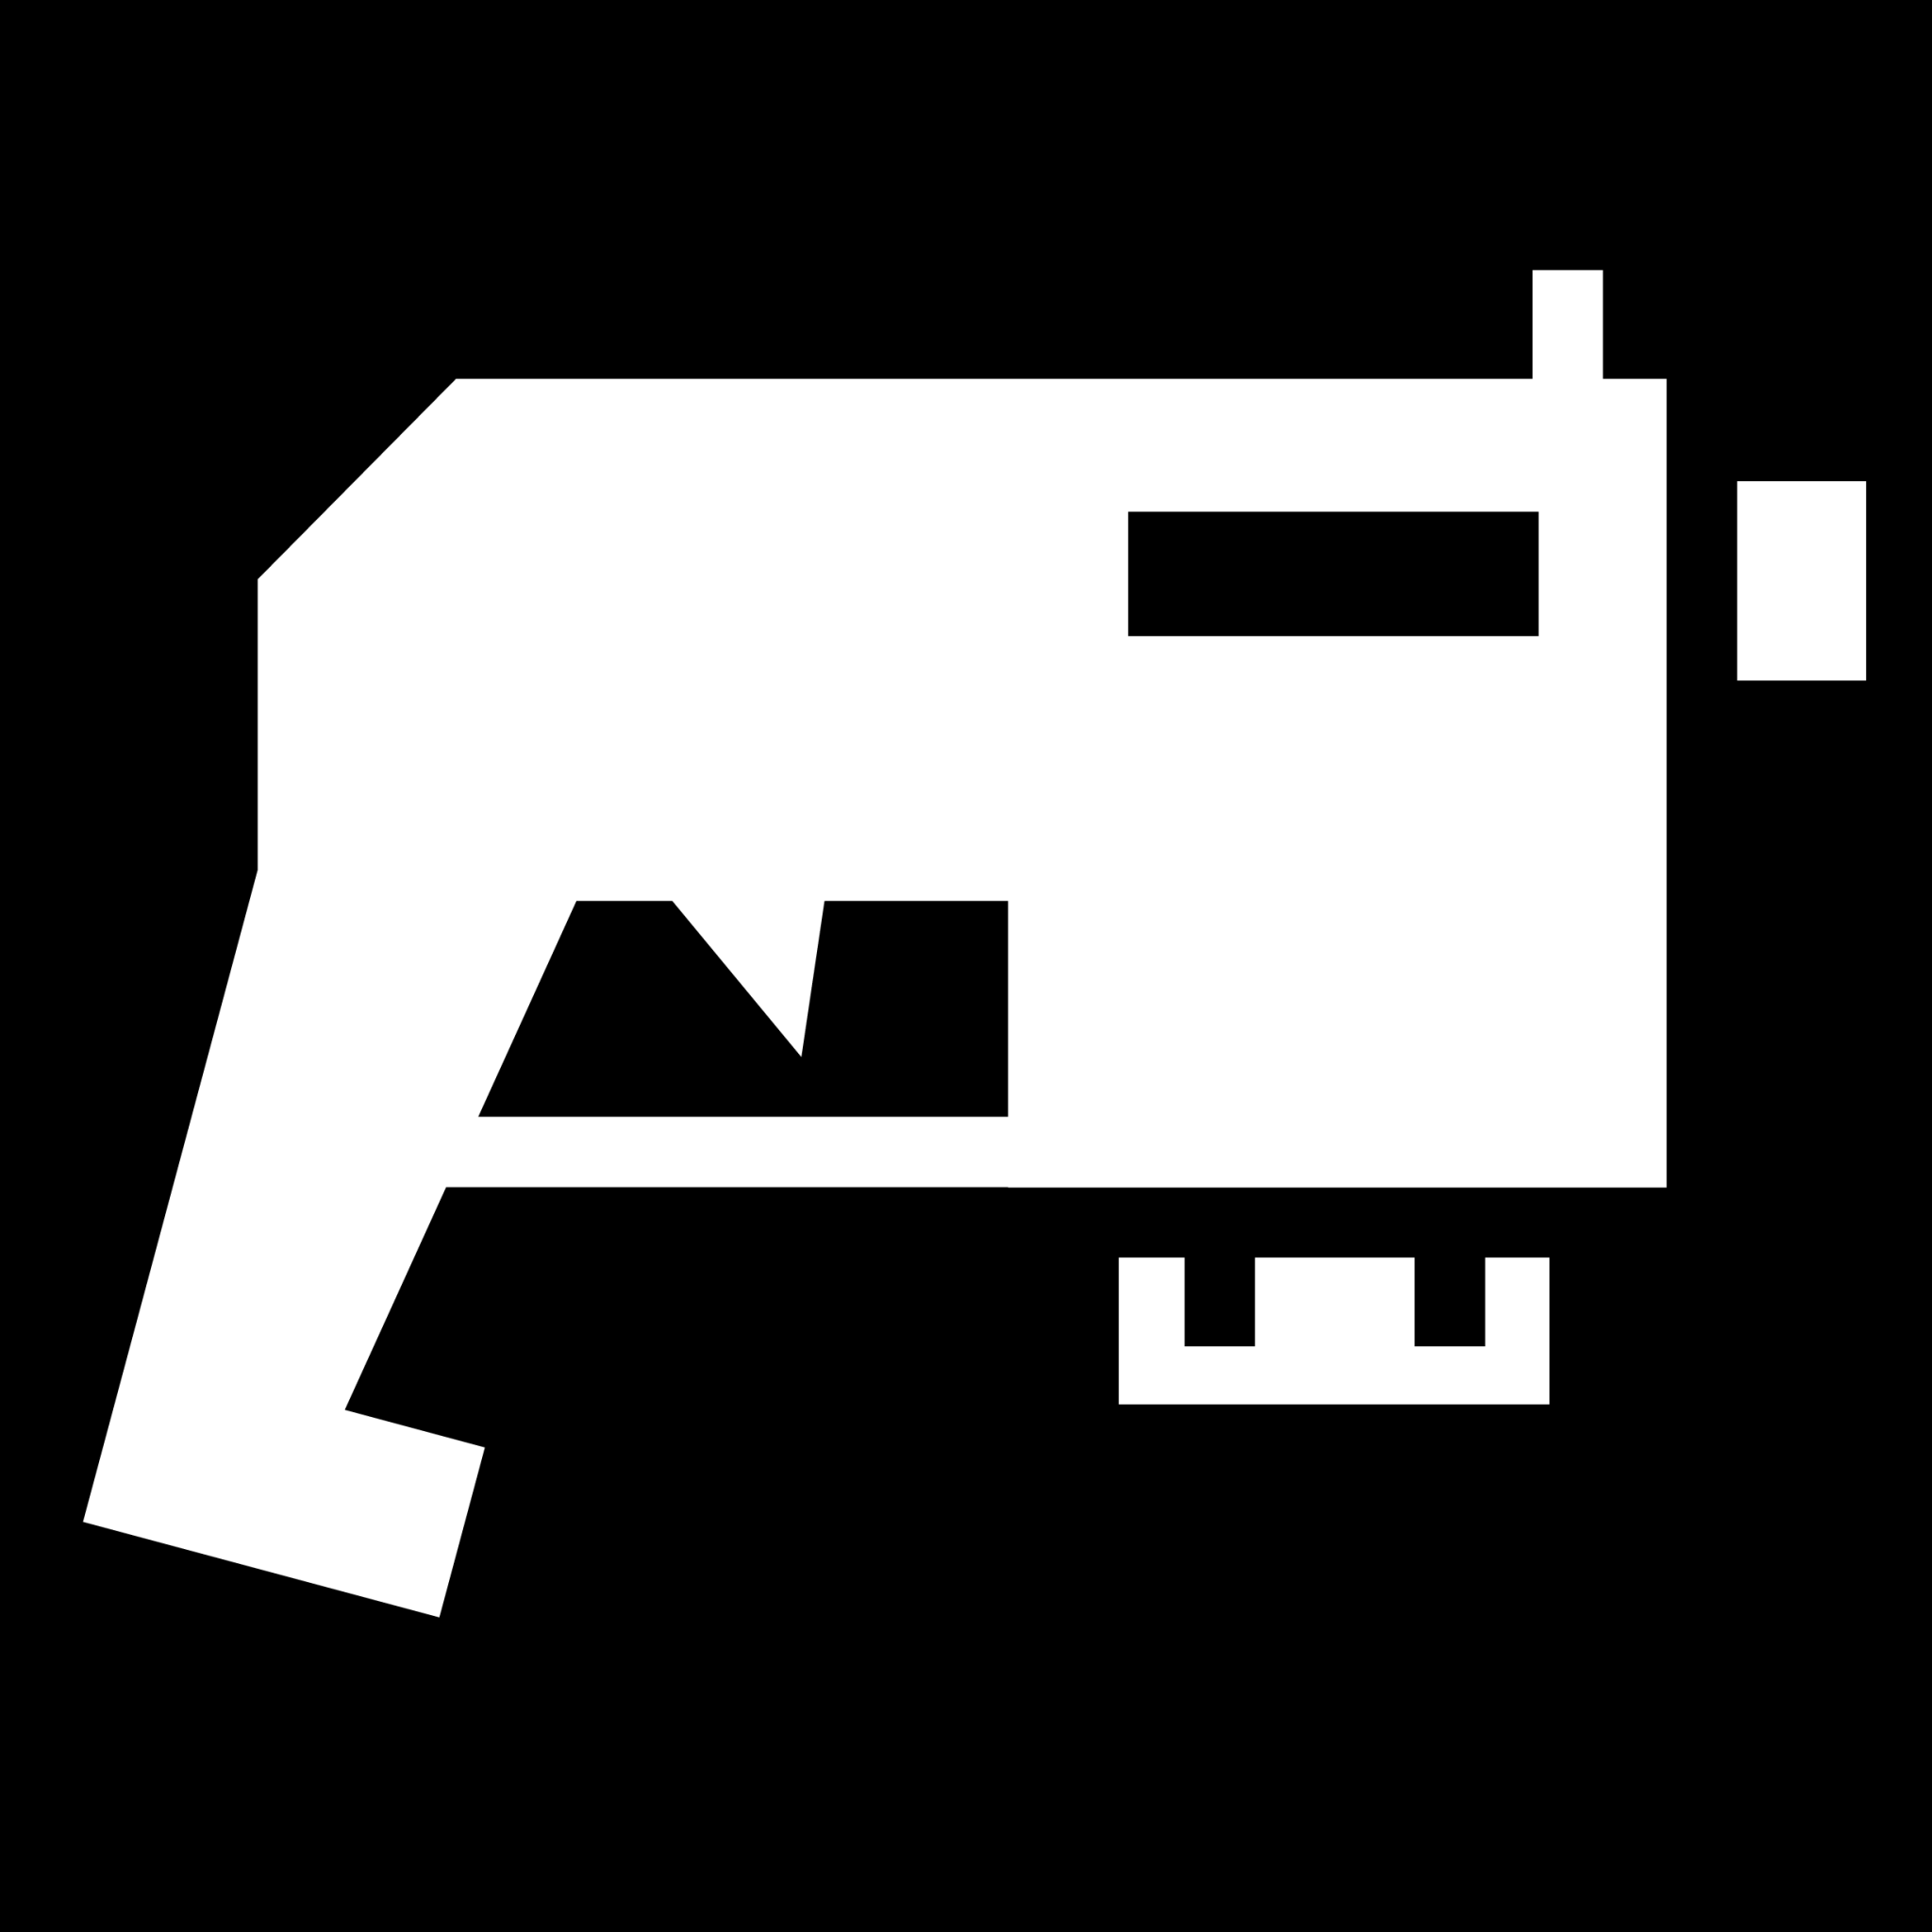 bolter gun icon